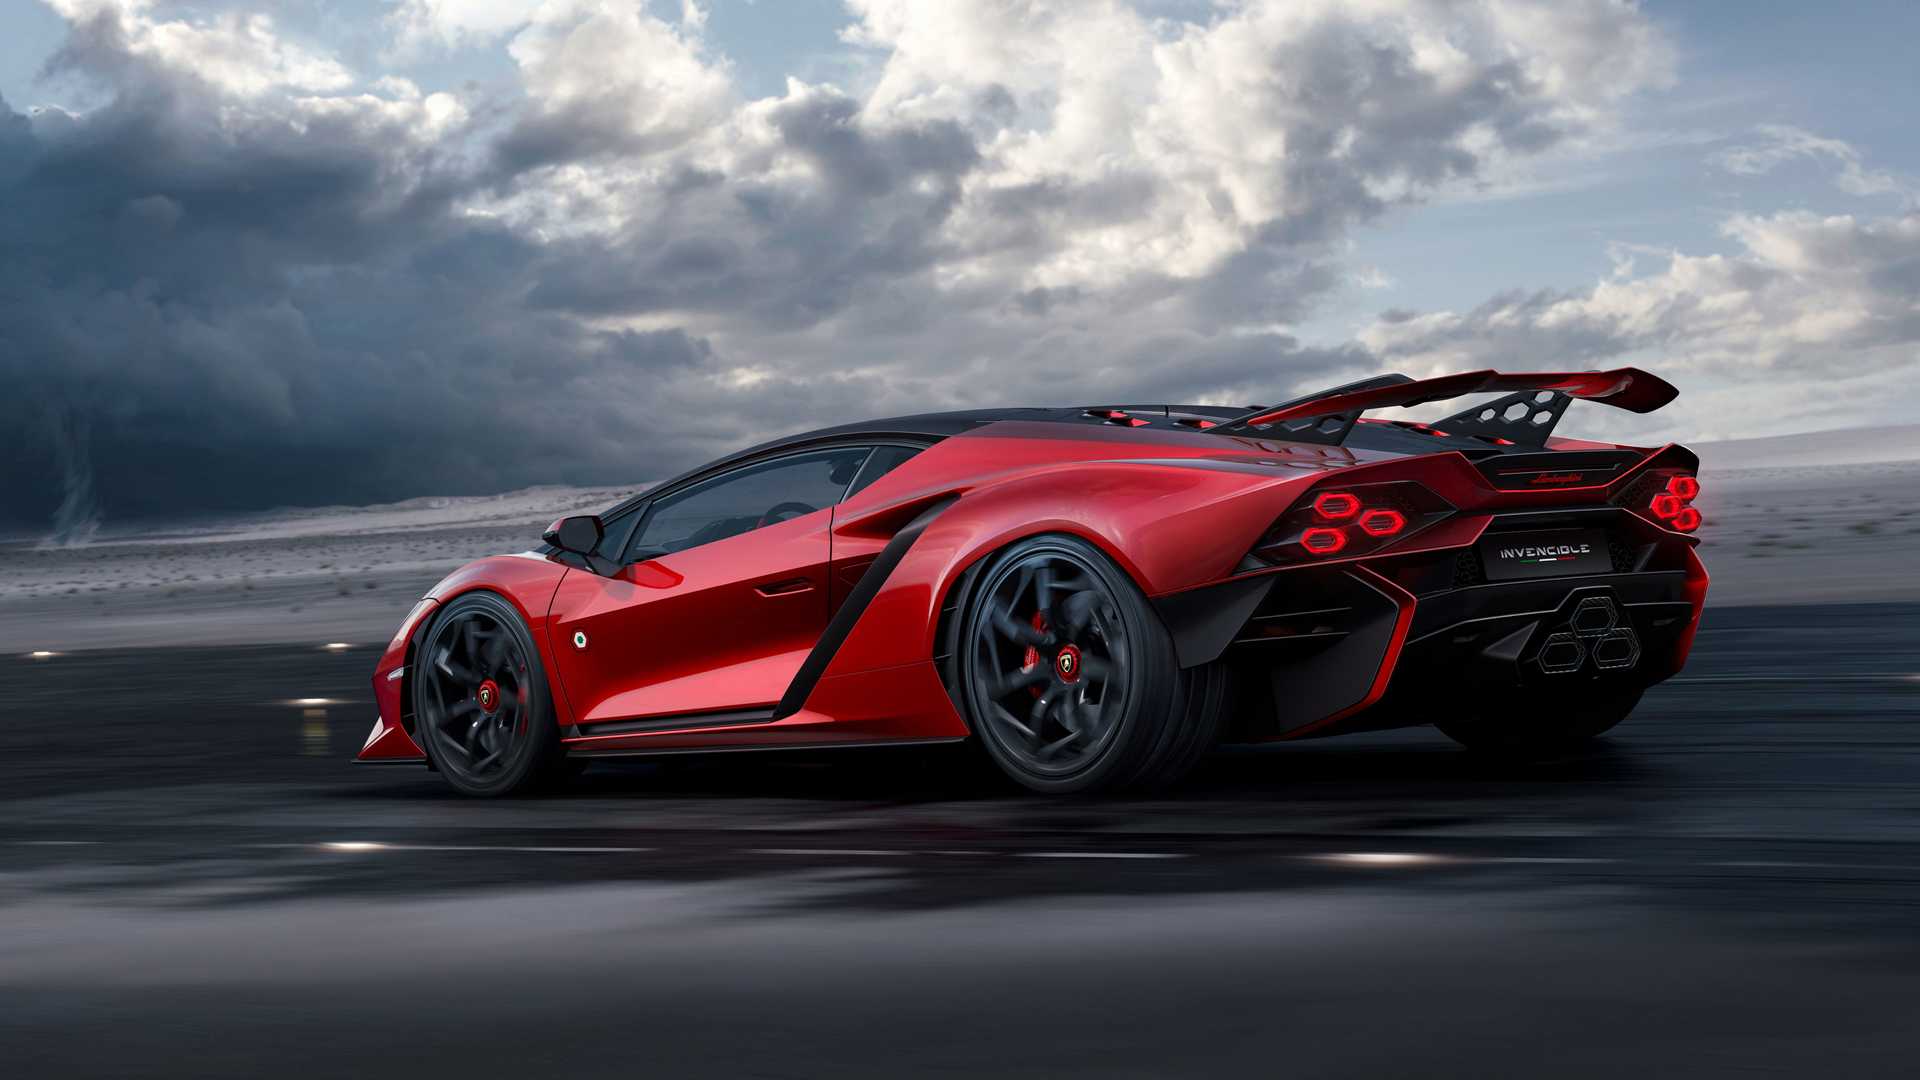 Lamborghini ra mắt bộ đôi siêu xe V12 chạy xăng cuối cùng, sau đây sẽ toàn siêu xe điện êm ru chưa biết nẹt pô kiểu gì - ảnh 6